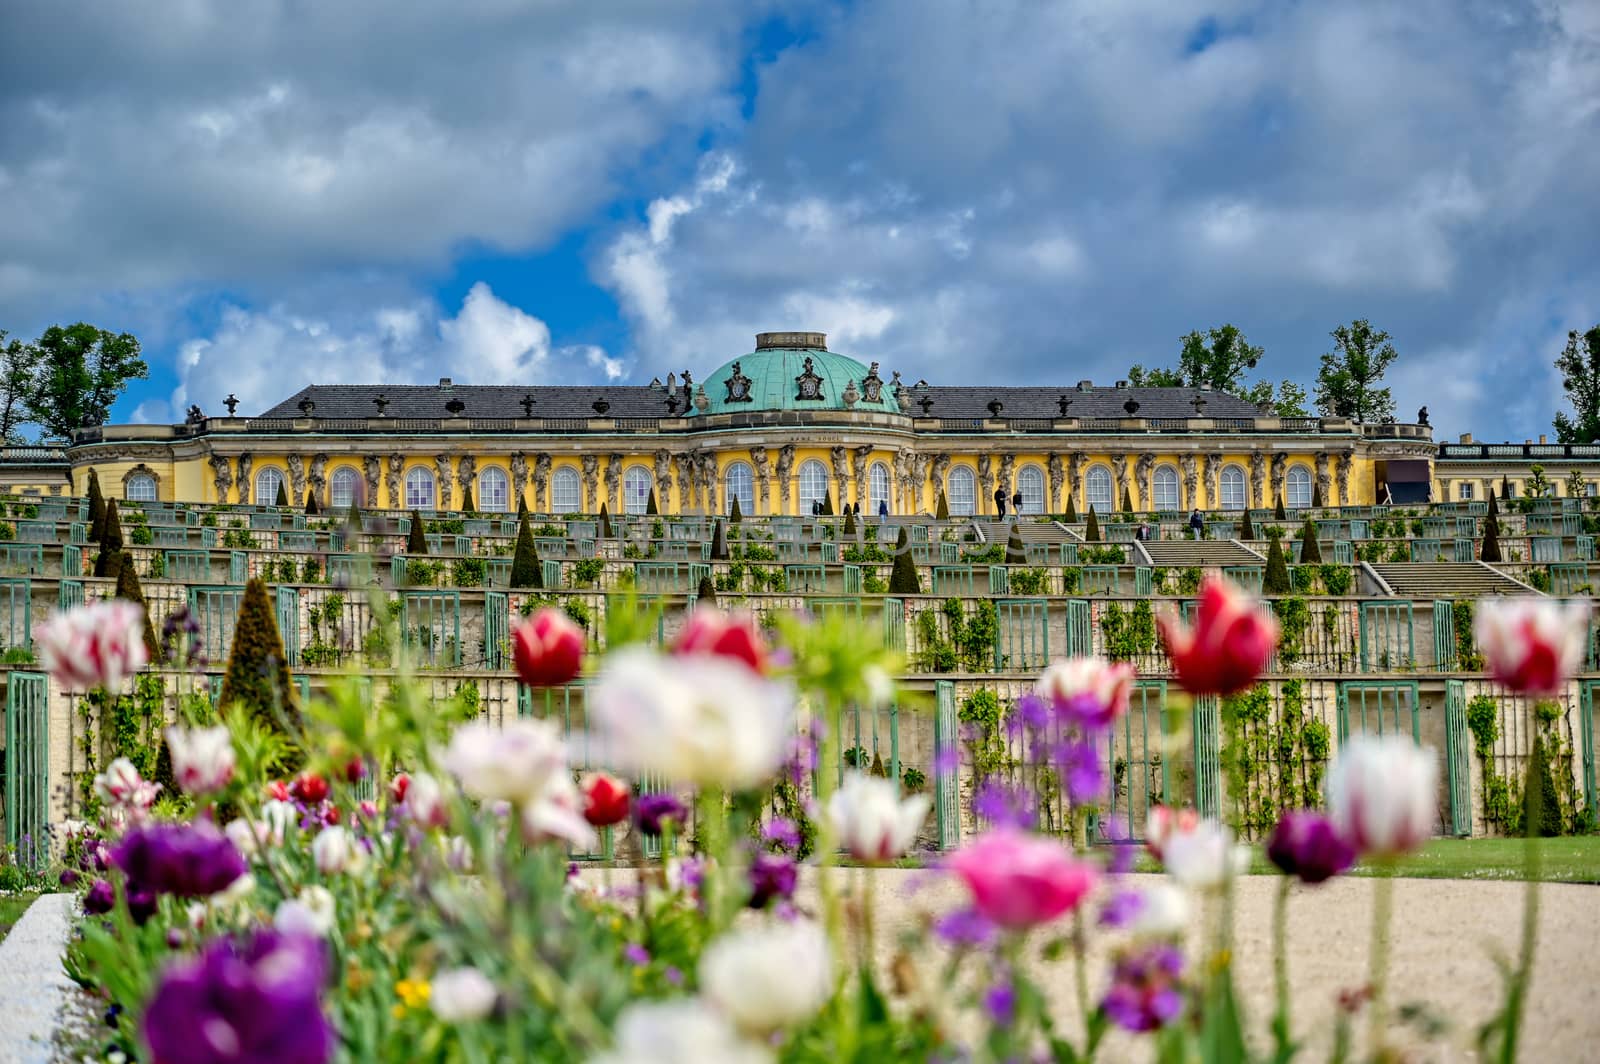 Sanssouci Palace in Potsdam, Germany by jbyard22